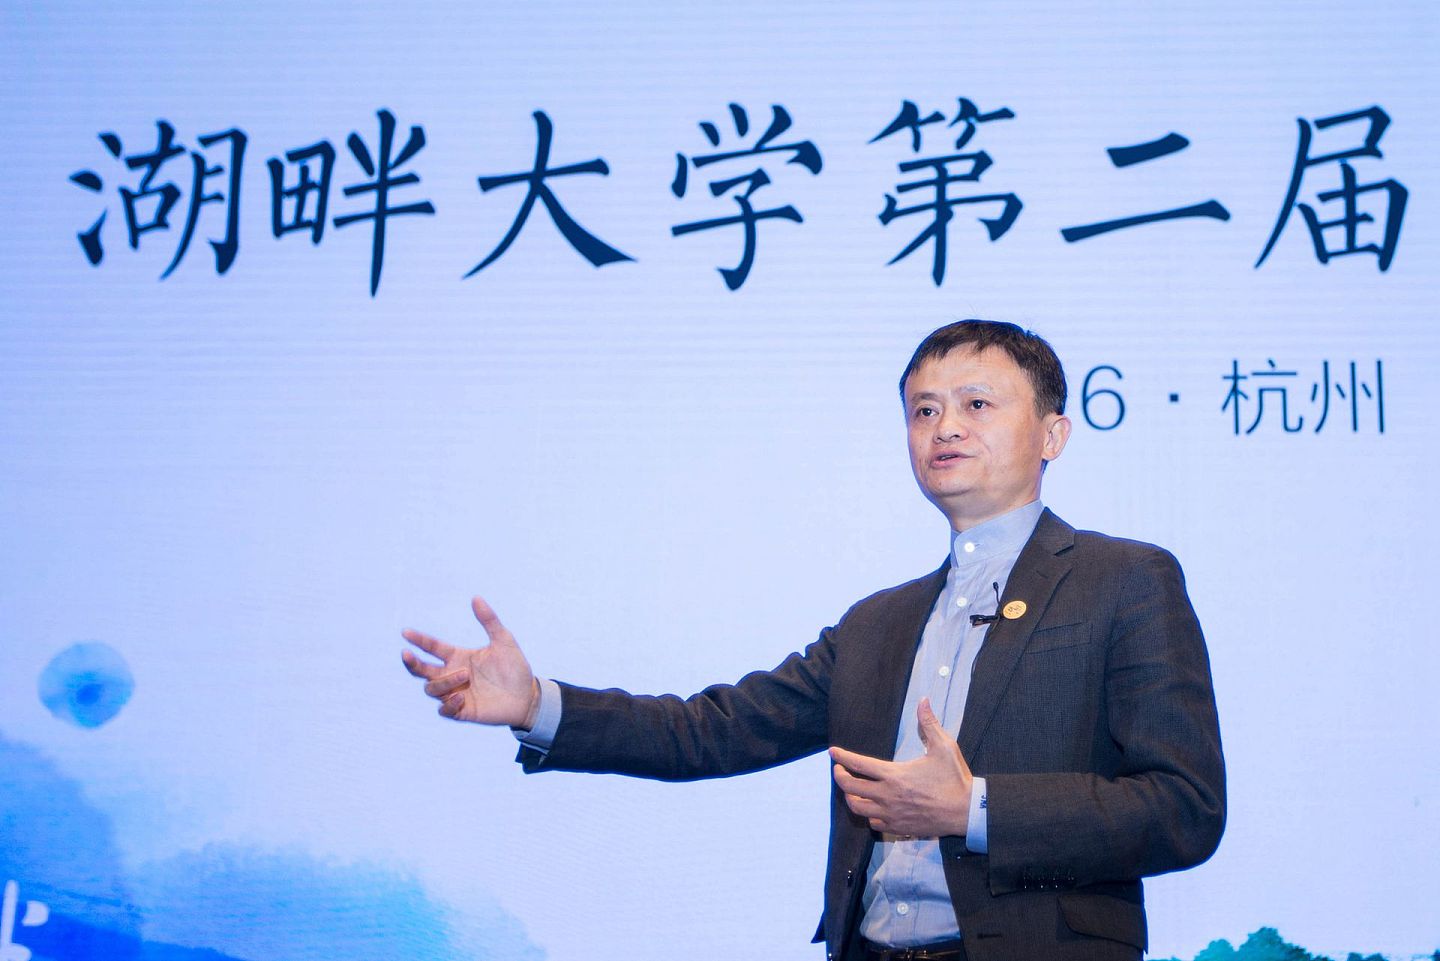 2016年3月27日，杭州湖畔大学第二届开学典礼上，马云讲话。有消息人士指出，北京可能认为，马云通过湖畔大学培养强大的追随者。（视觉中国）